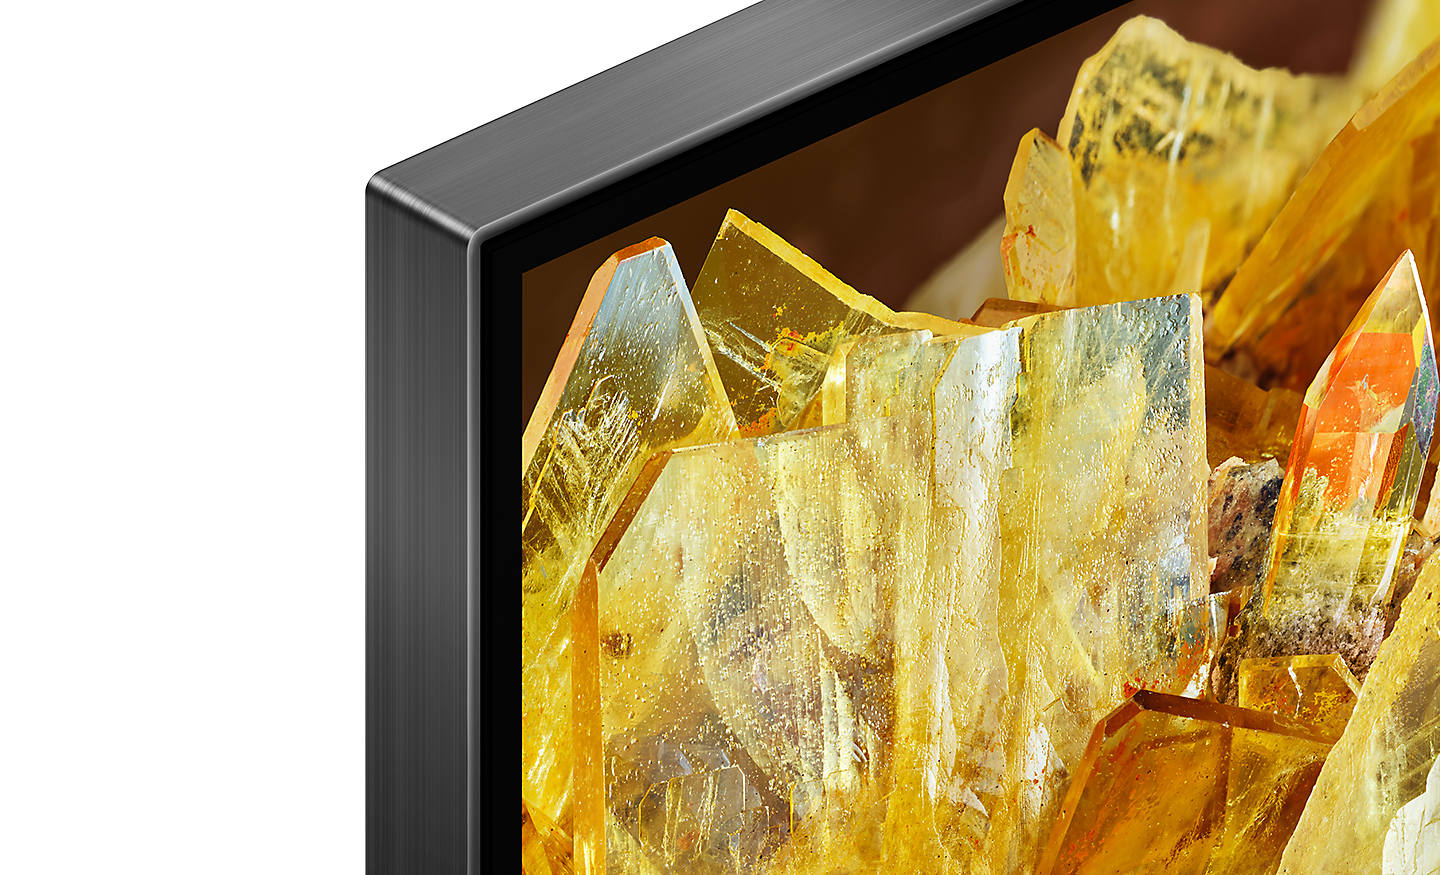 Hjørne av en TV som viser gullkrystaller på skjermen